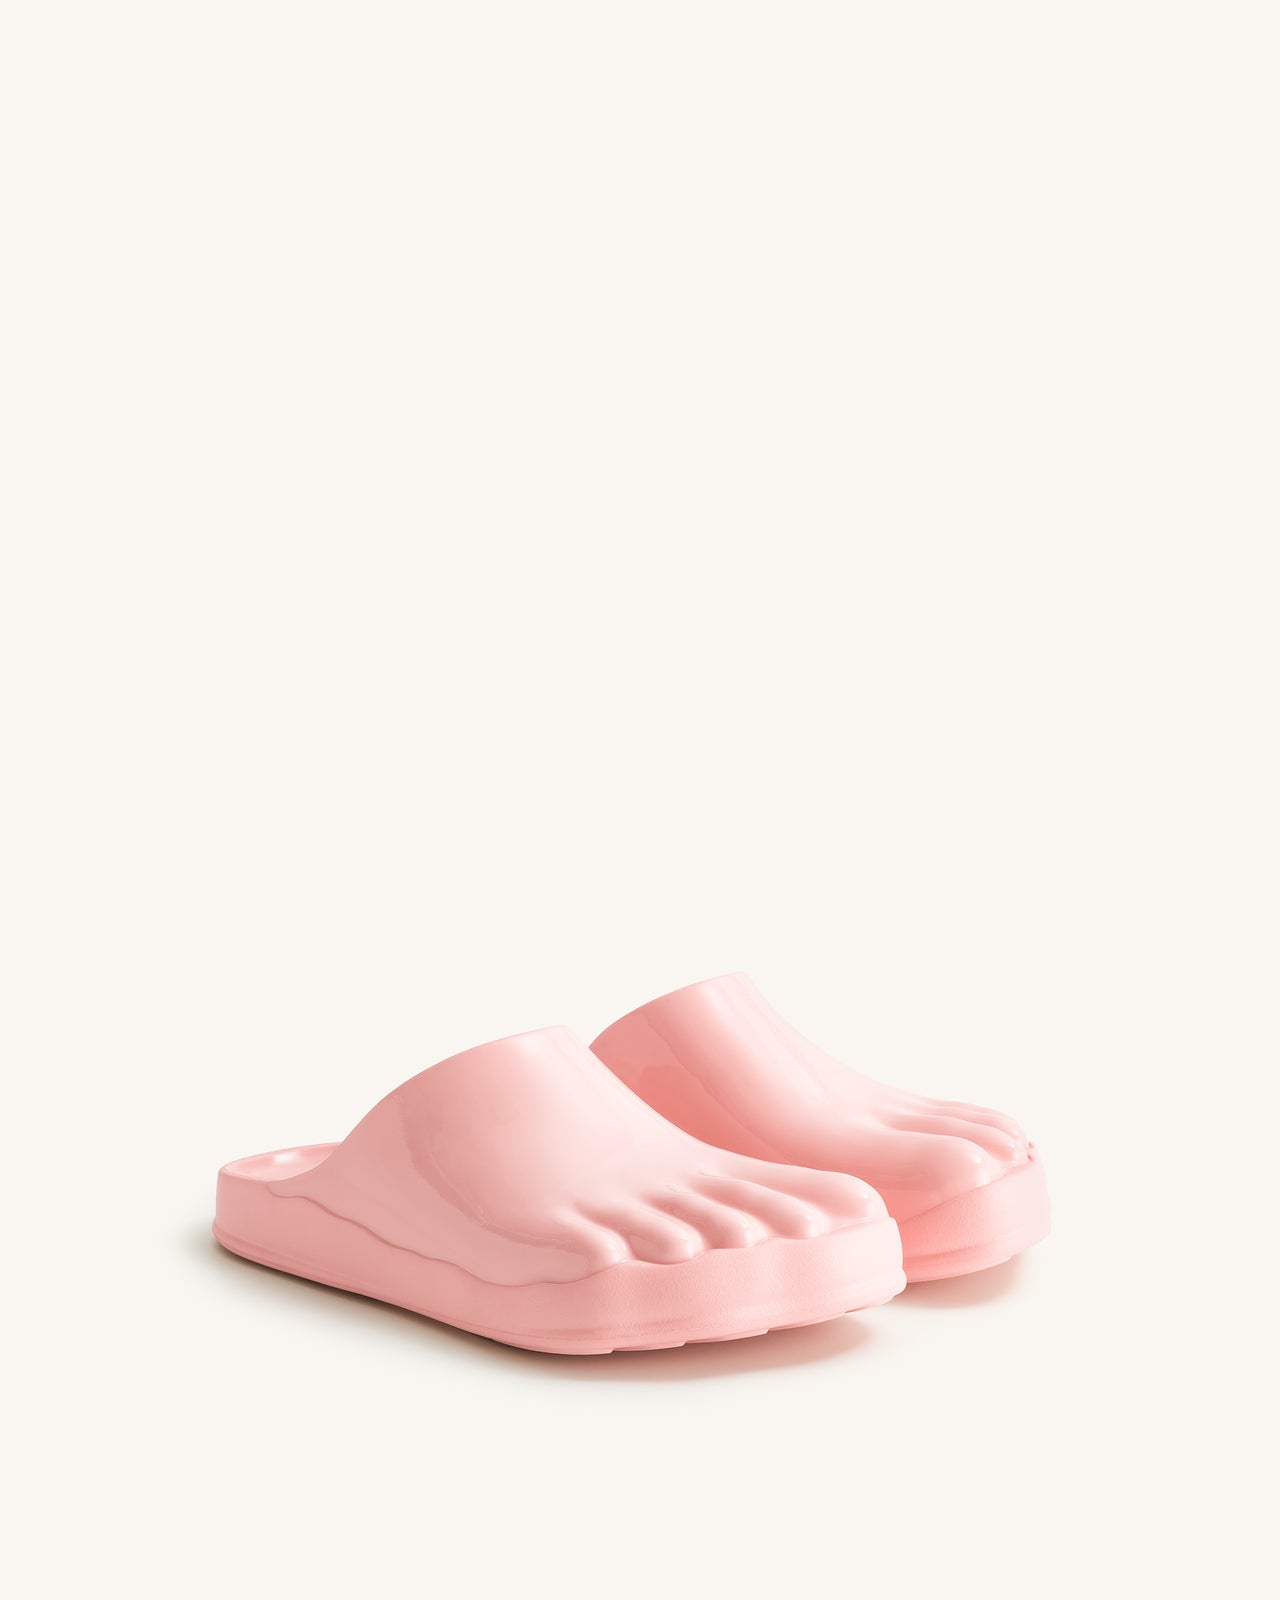 Hayley Toe Model Flat Mules - Pink Beige